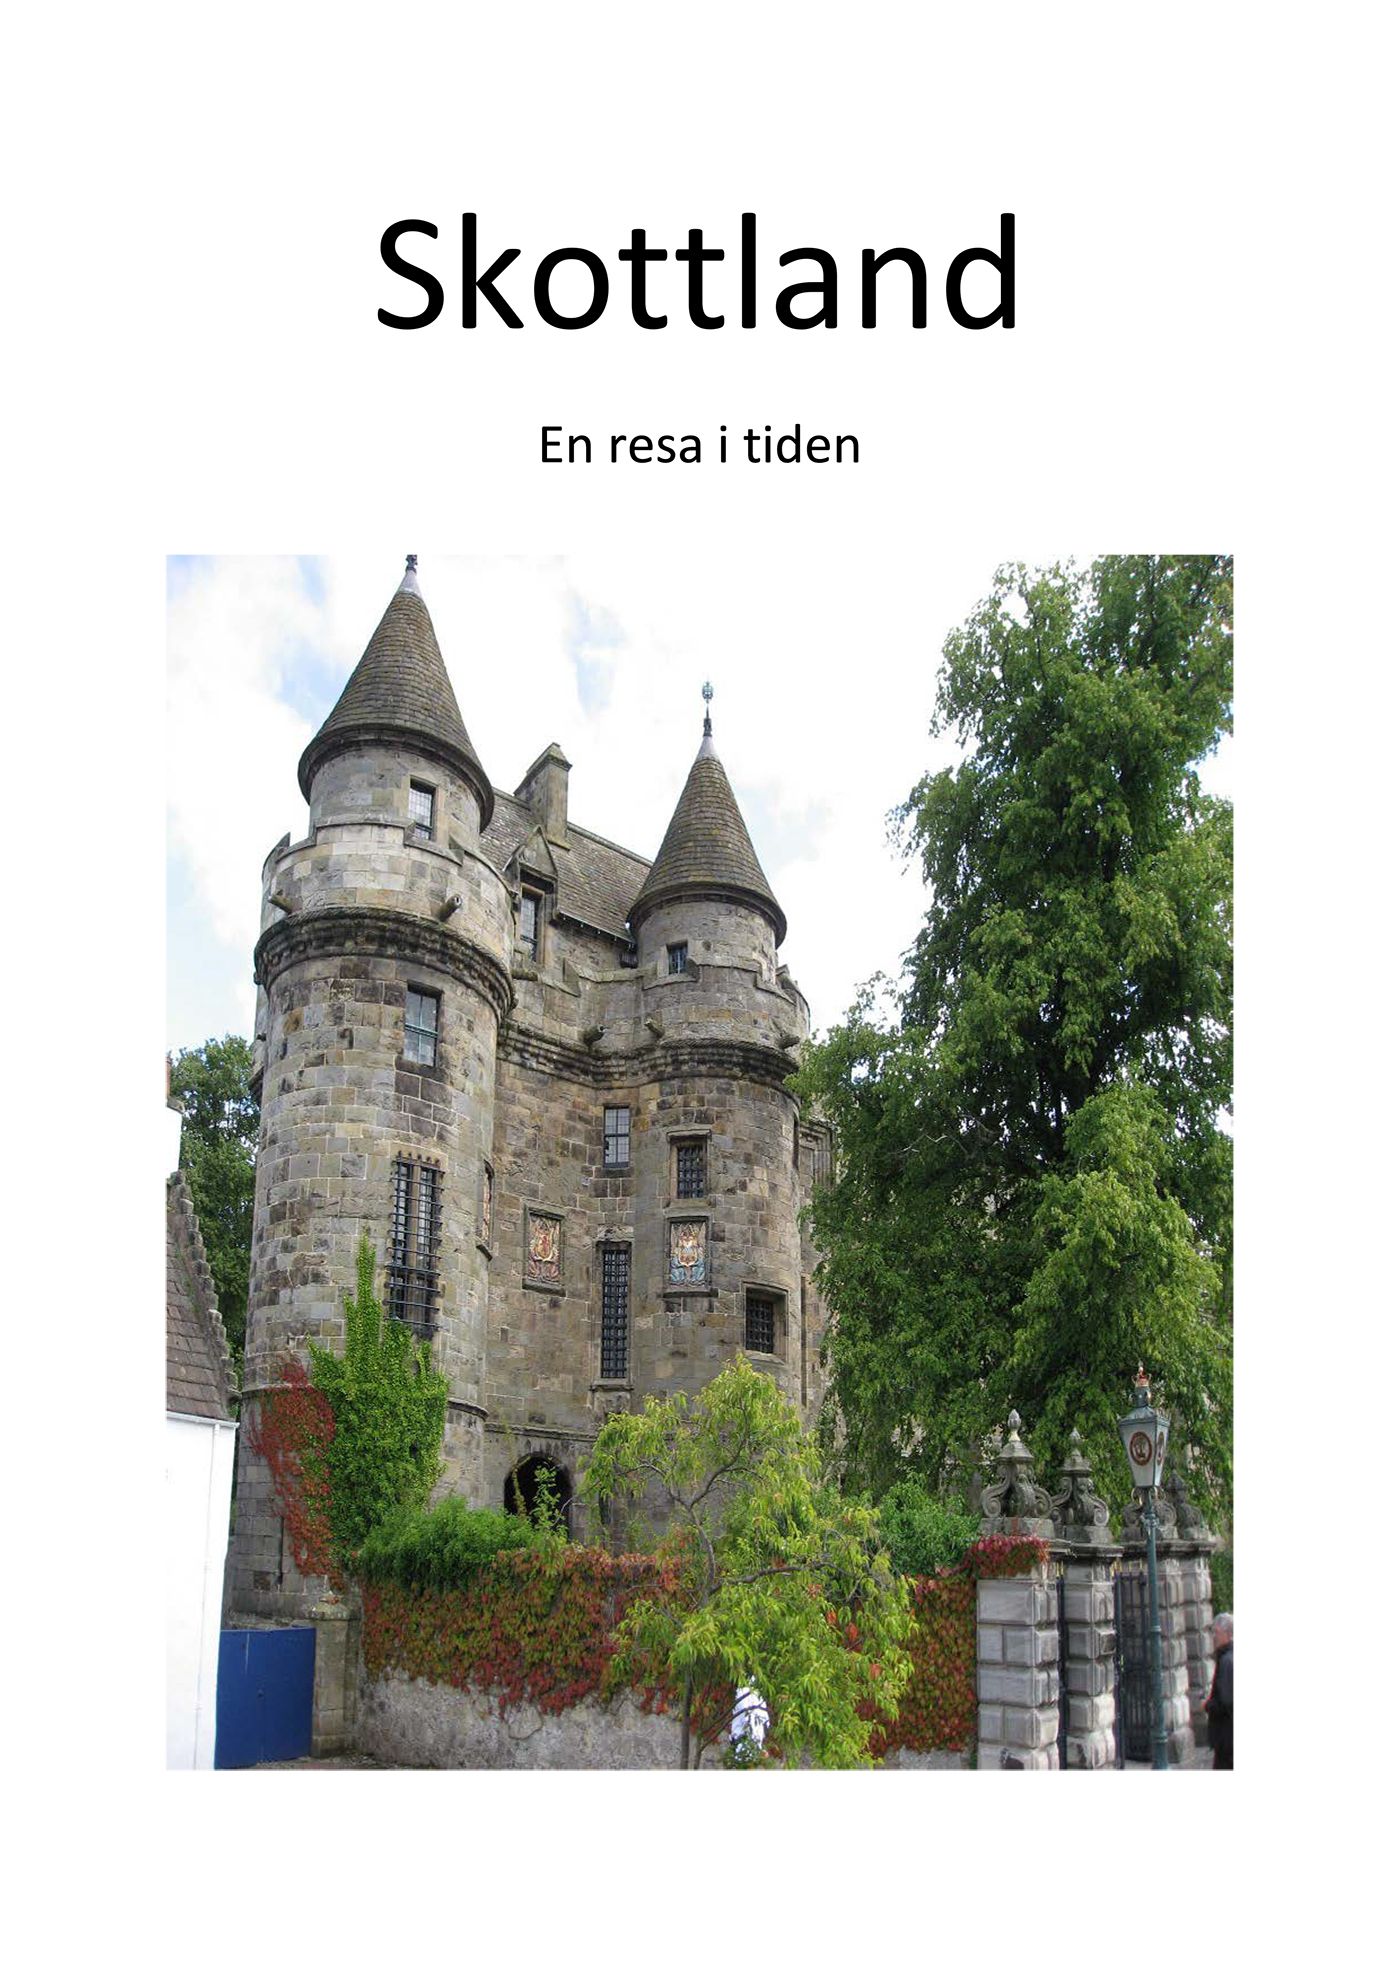 Skottland - En resa i tiden, e-bog af Curt Jonsson